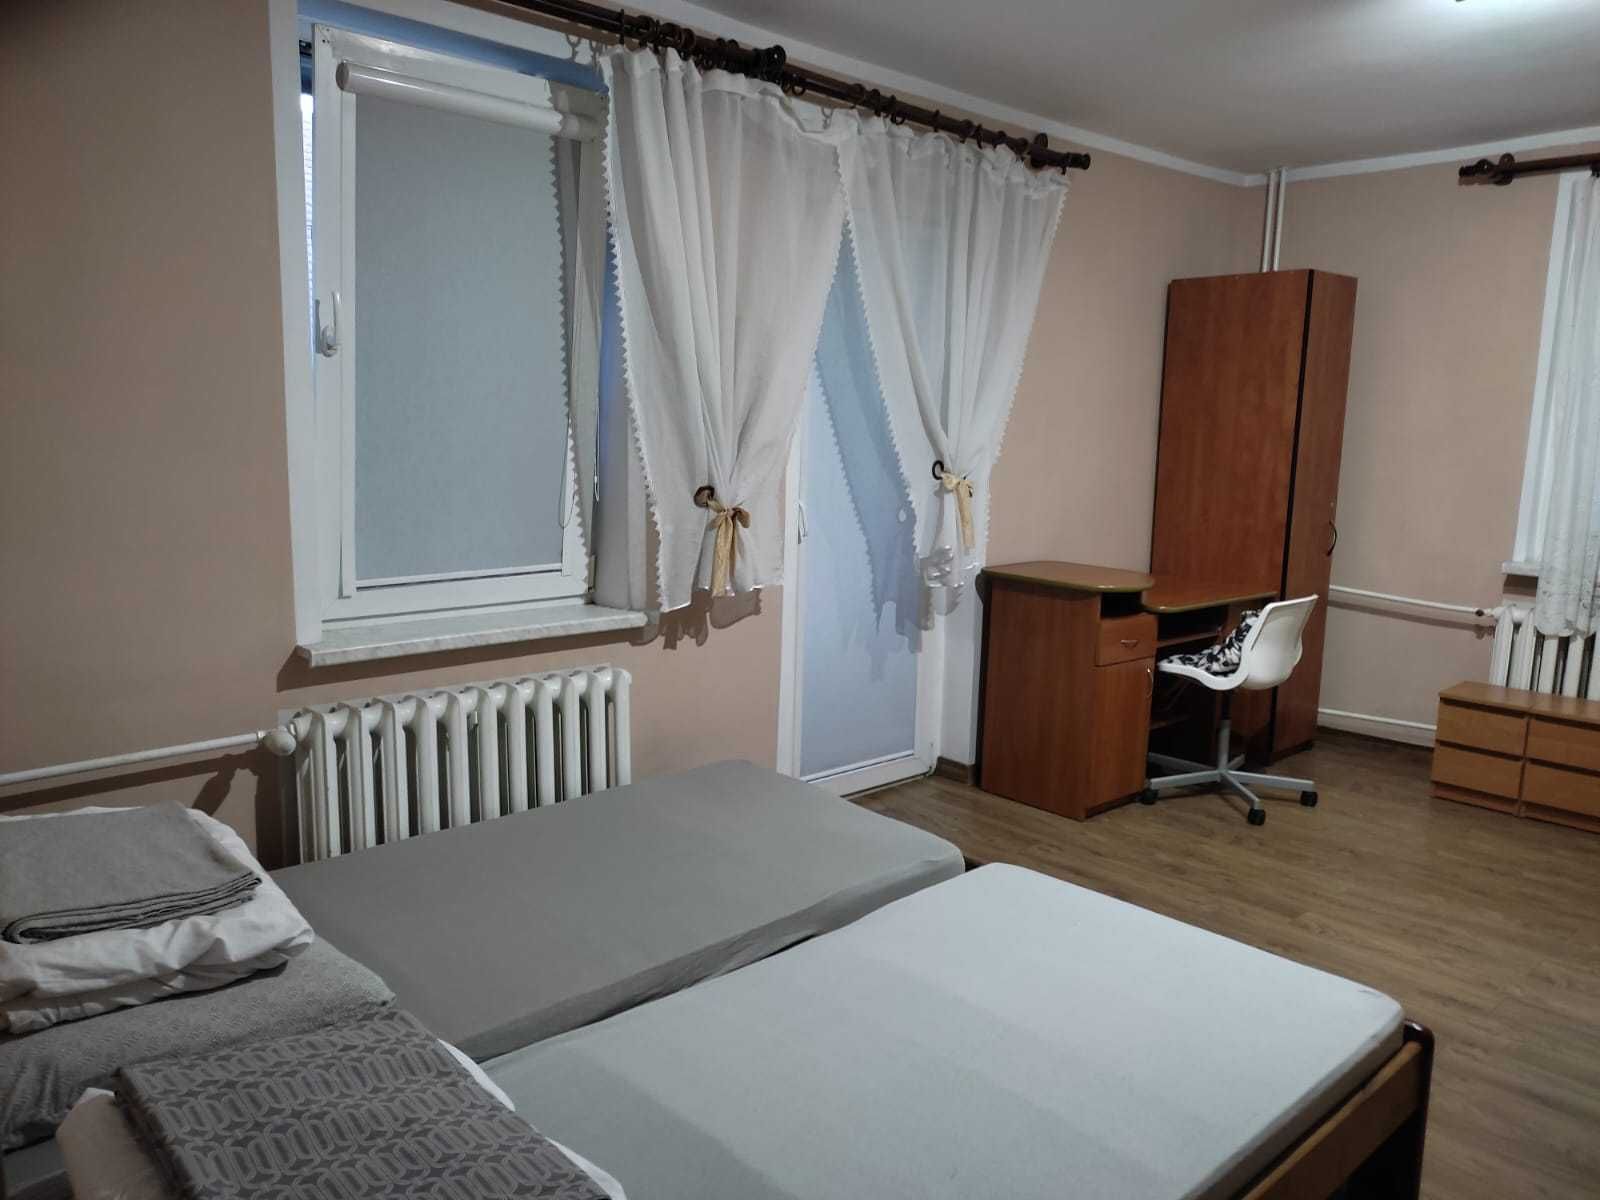 Darmowe mieszkanie dla rodziny z Ukrainy w ramach programu 40+